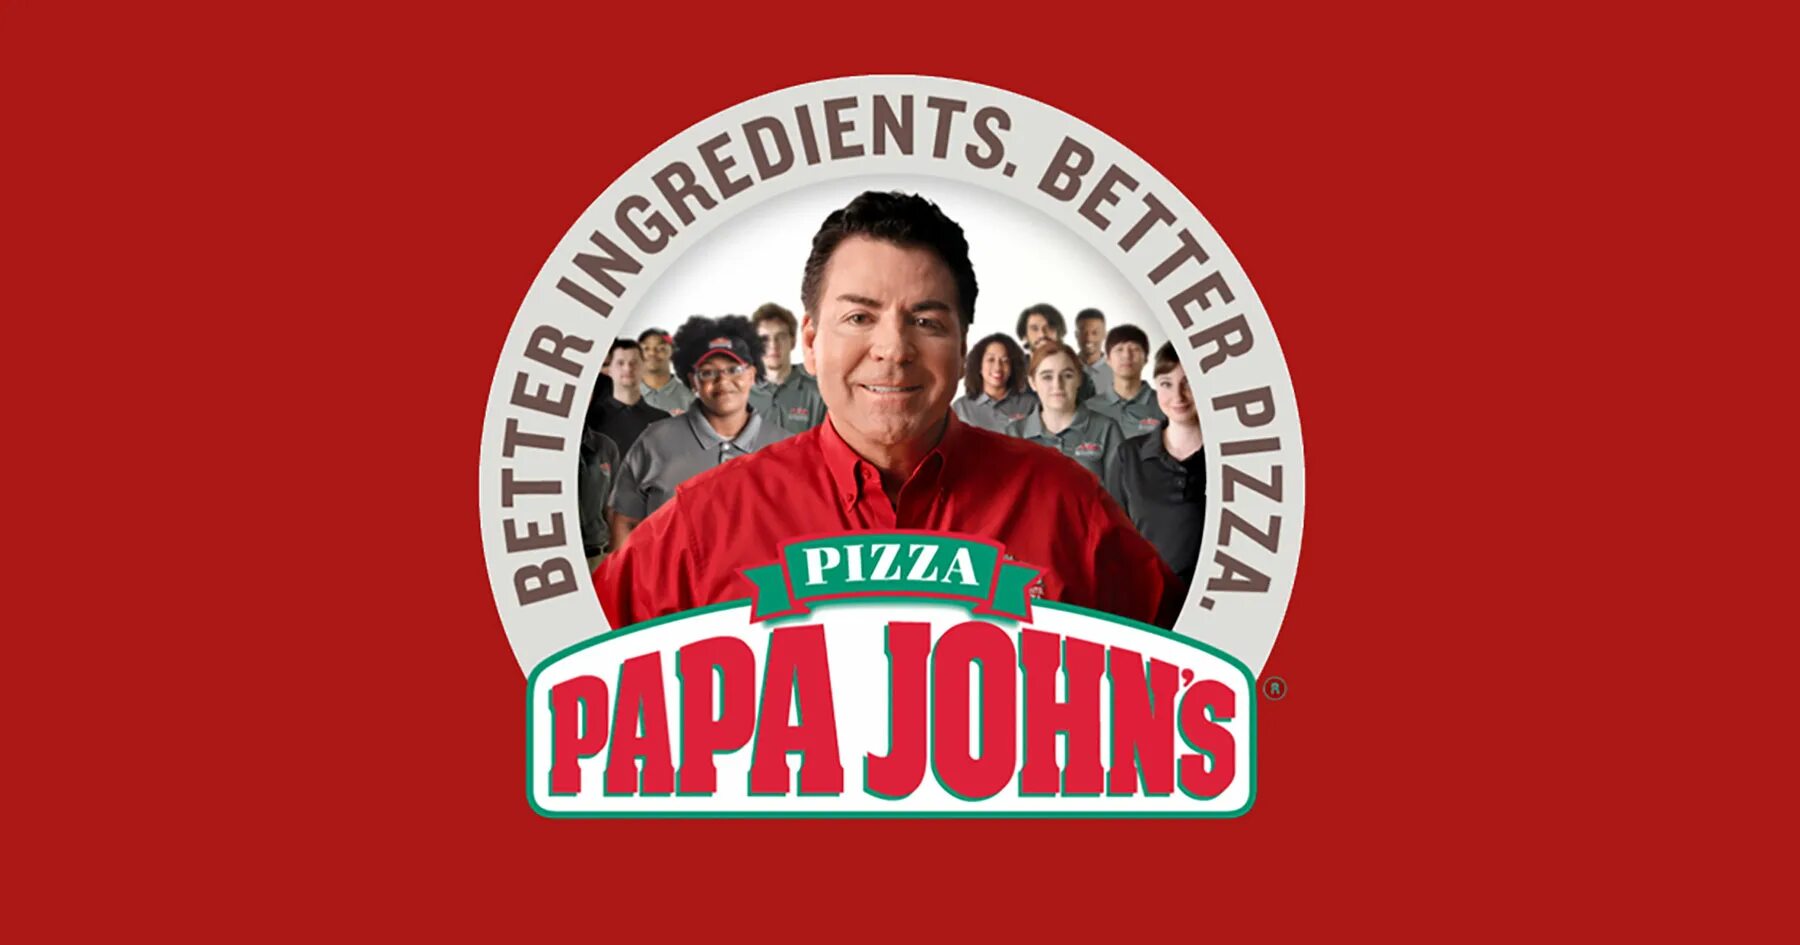 Папа Джонс пицца лого. Джон Шнаттер папа Джонс. Папа Джонс логотип. Пицца папа Джонс логотип. Папа джонс время